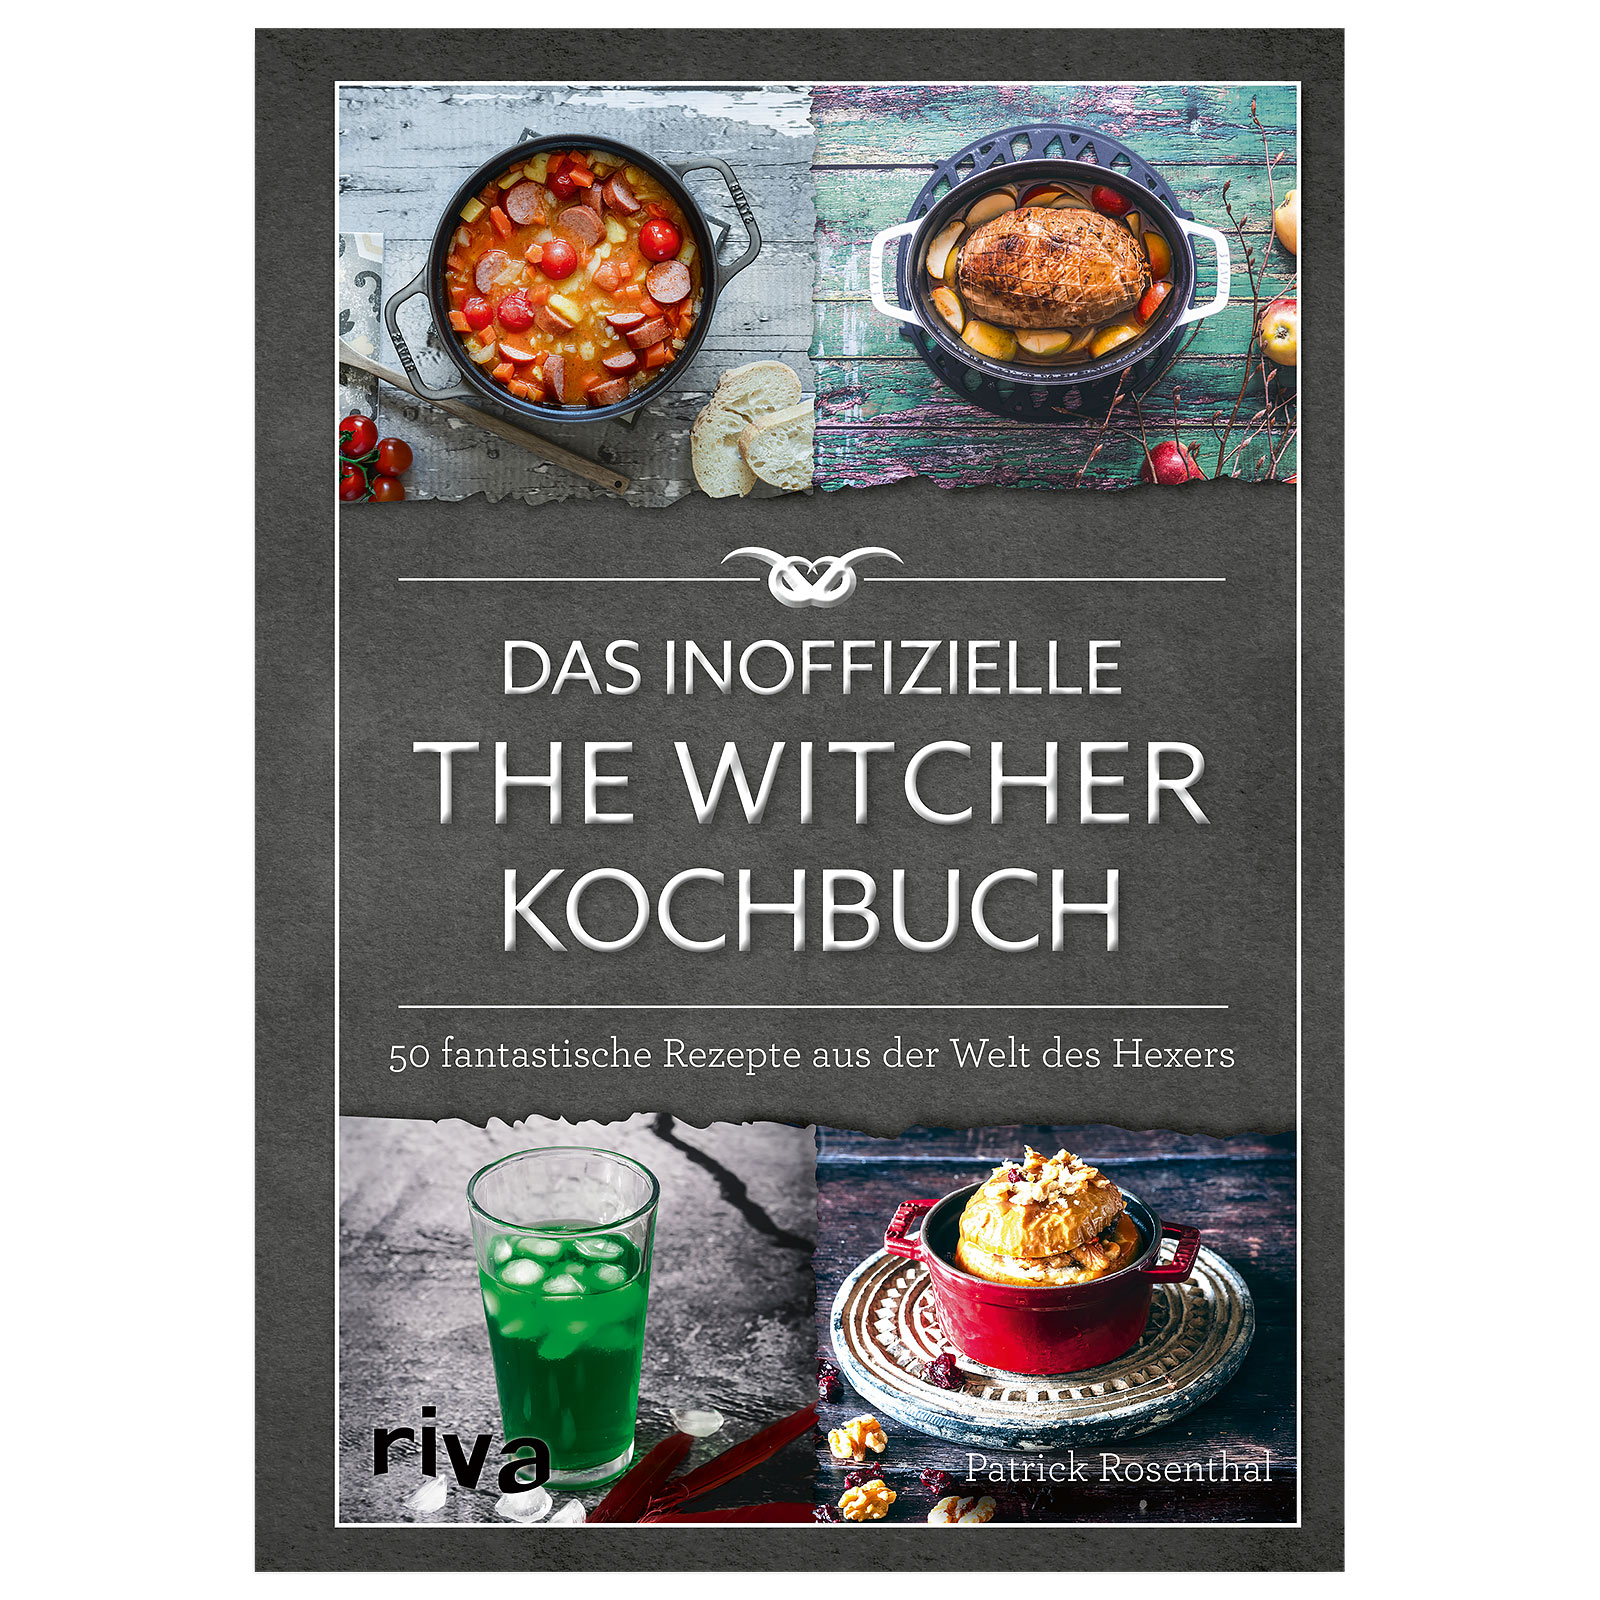 Das inoffizielle The Witcher Kochbuch